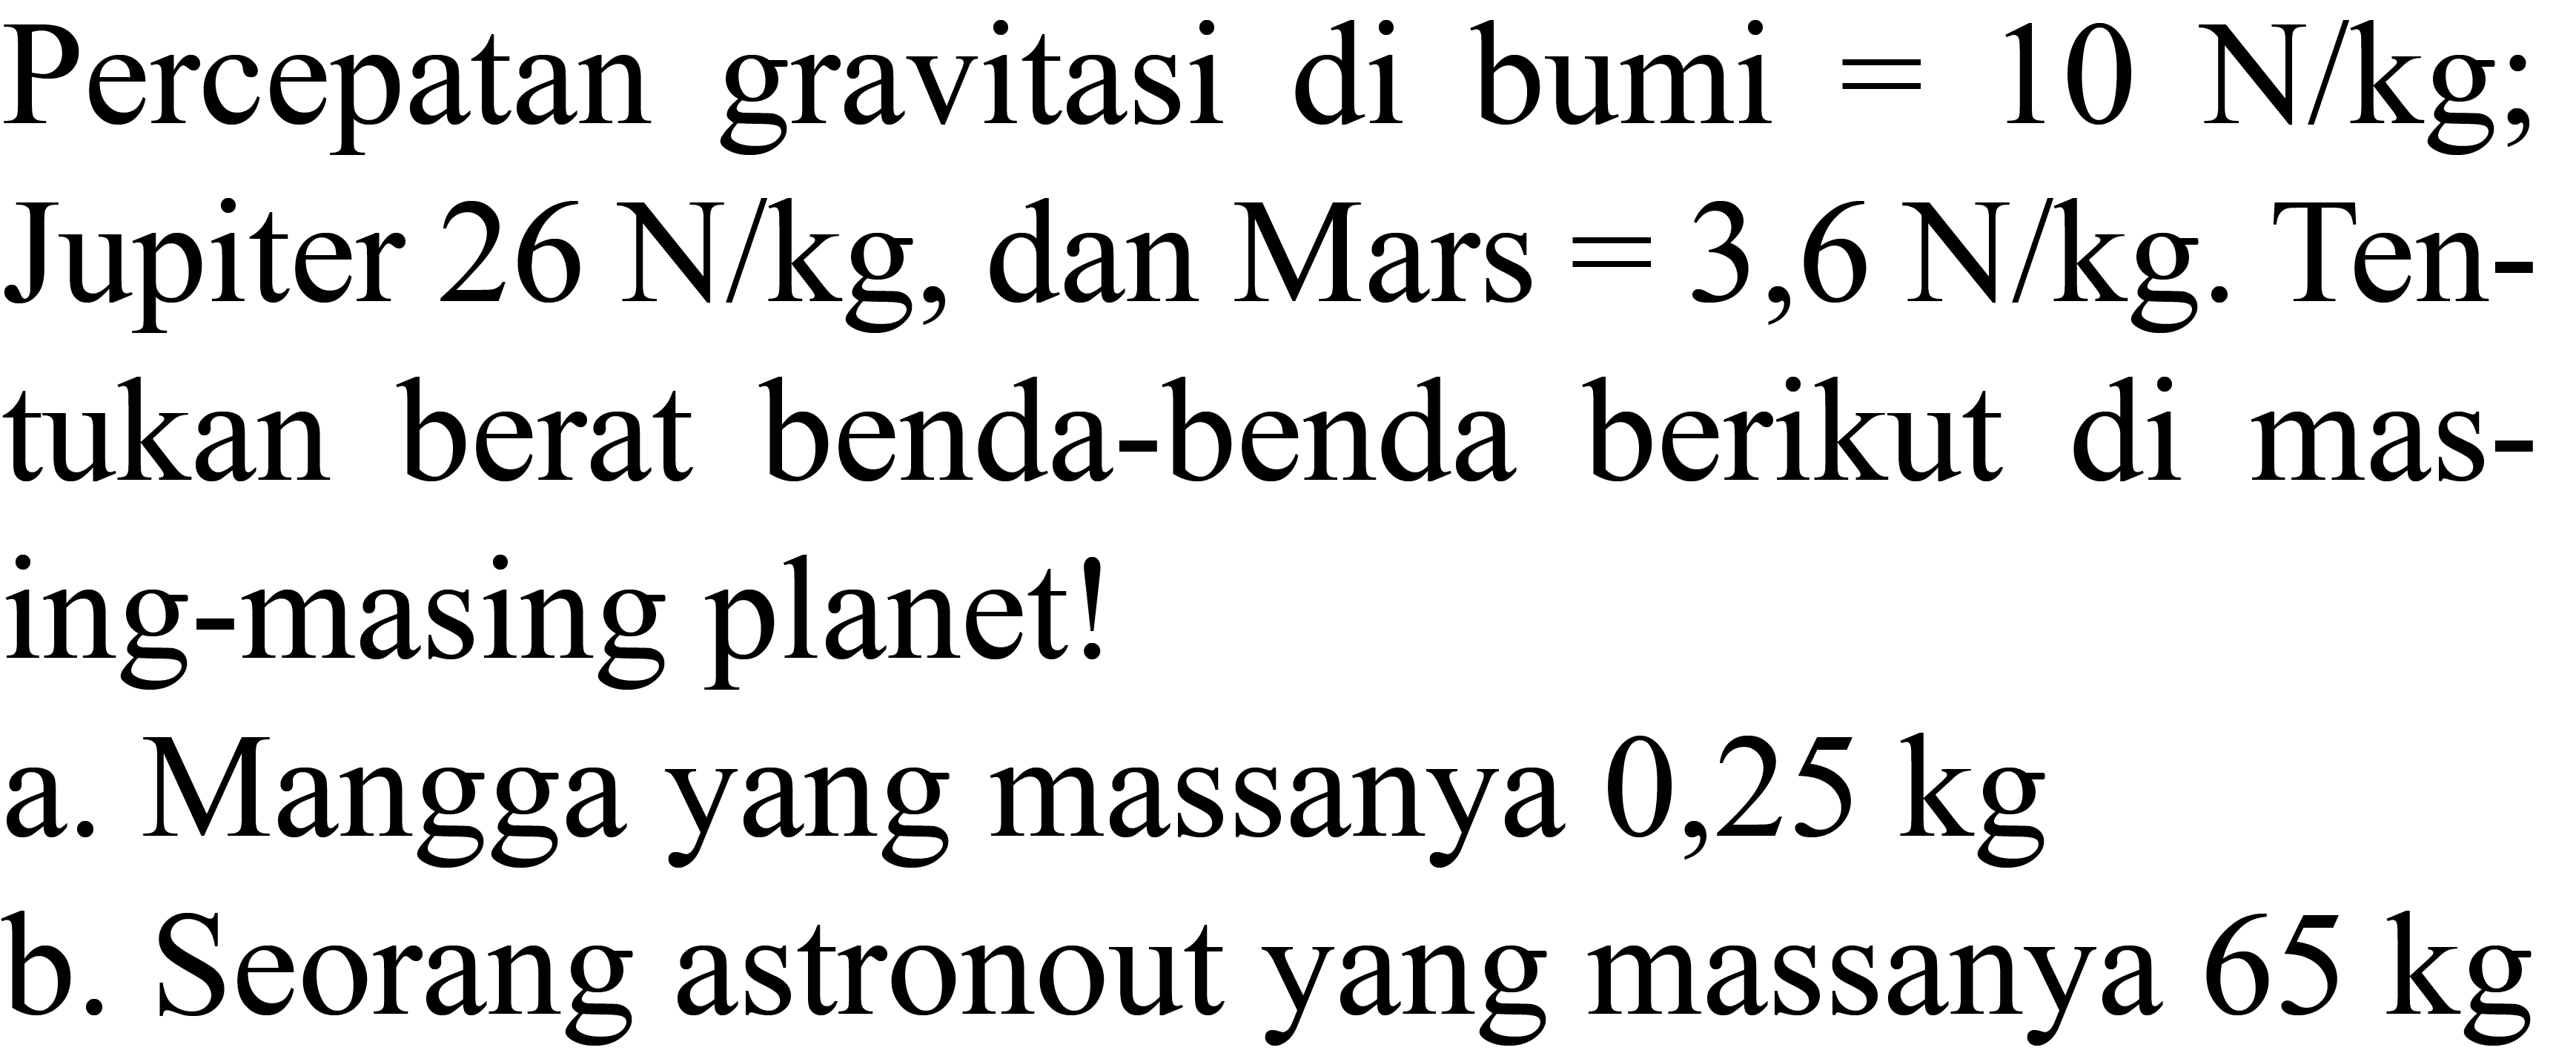 Percepatan gravitasi di bumi  =10 N / kg ; Jupiter  26 N / kg , dan Mars  =3,6 N / kg . Tentukan berat benda-benda berikut di masing-masing planet!
a. Mangga yang massanya  0,25 kg 
b. Seorang astronout yang massanya  65 kg 